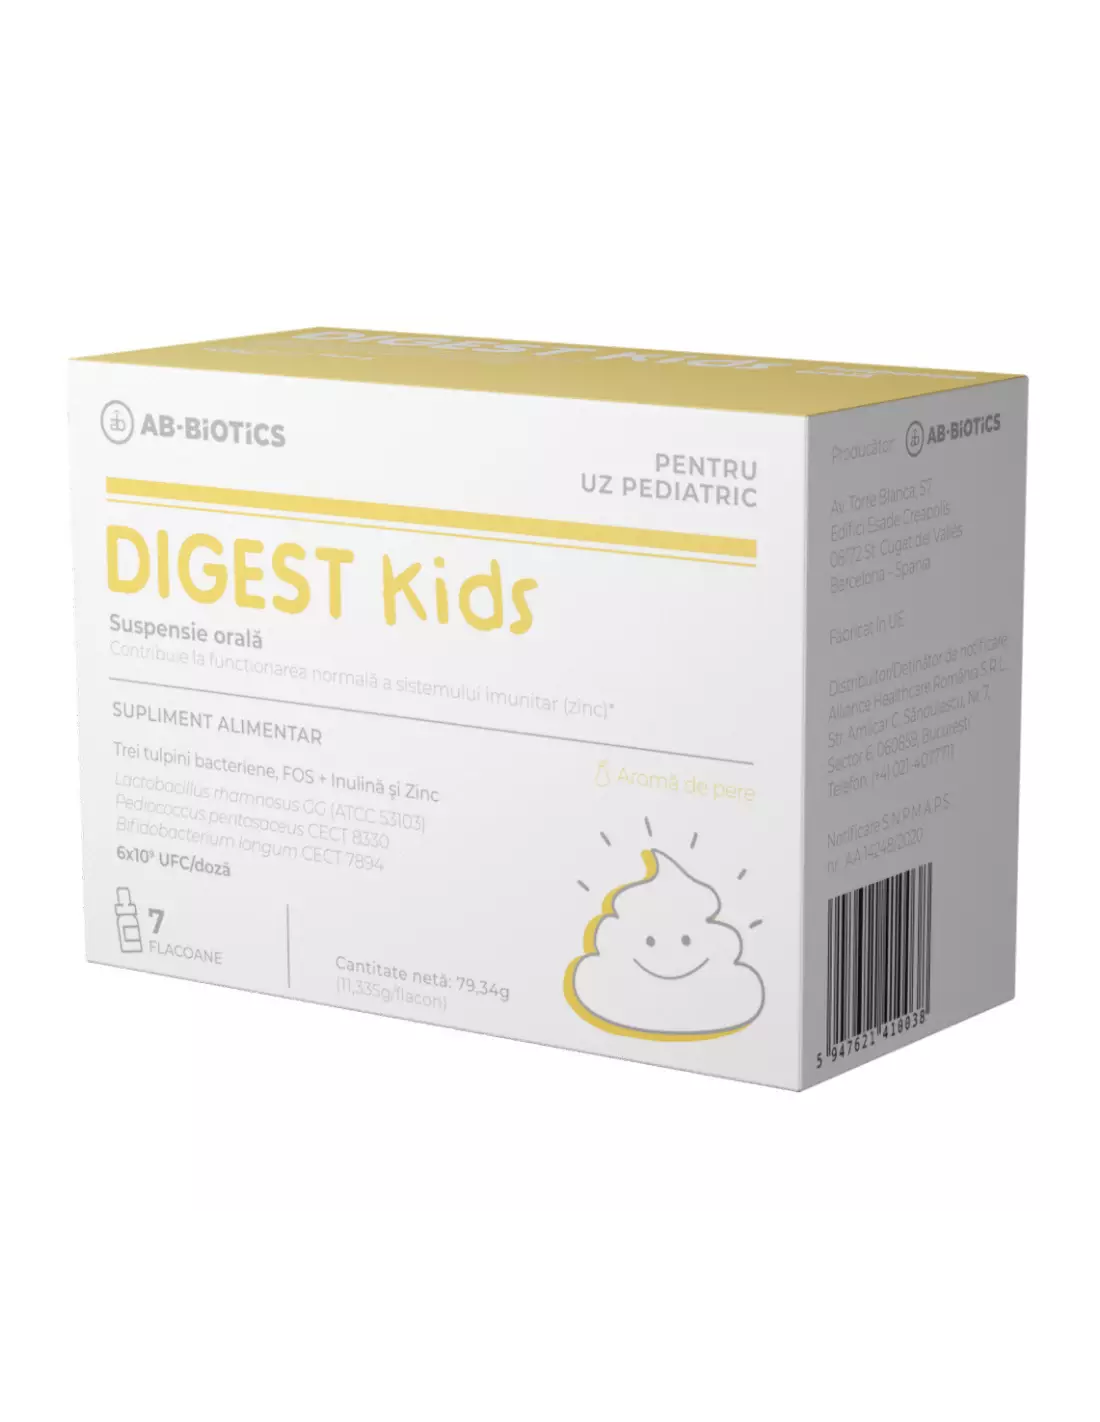 Suspensie orala Digest Kids, 7 flacoane, Ab-Biotics - DIAREE - AB-BIOTICS